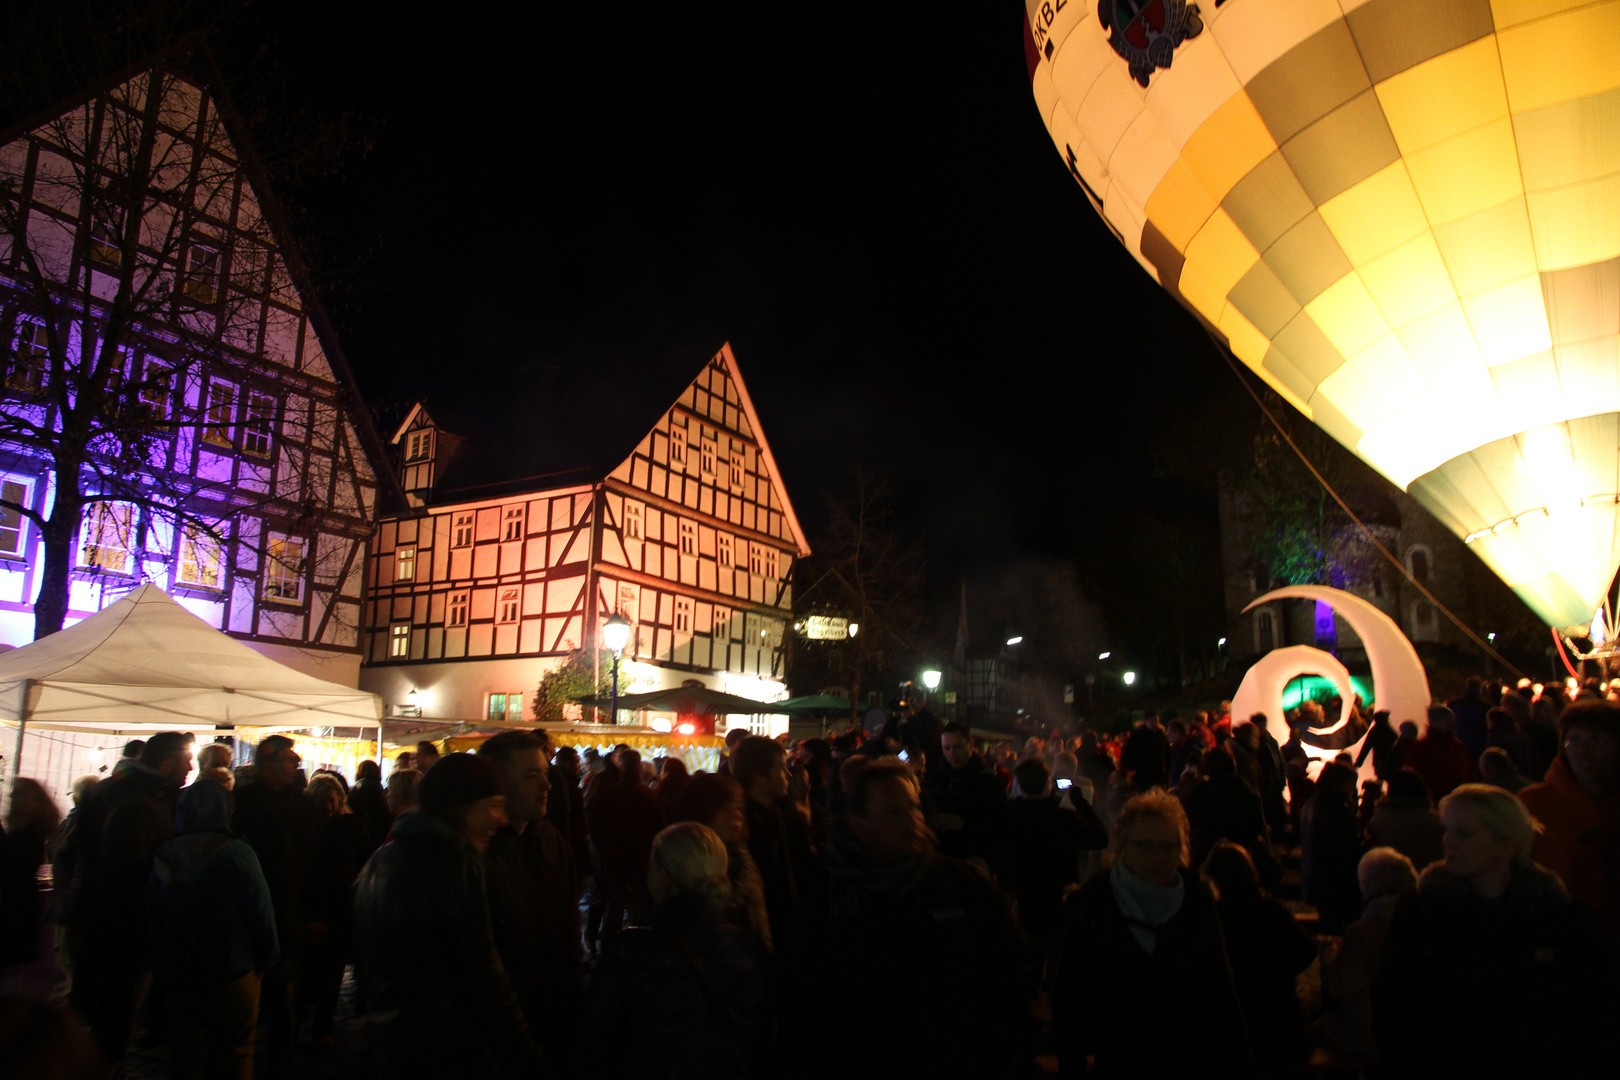 Mondscheinmarkt in Hilchenbach am 28.10.2012